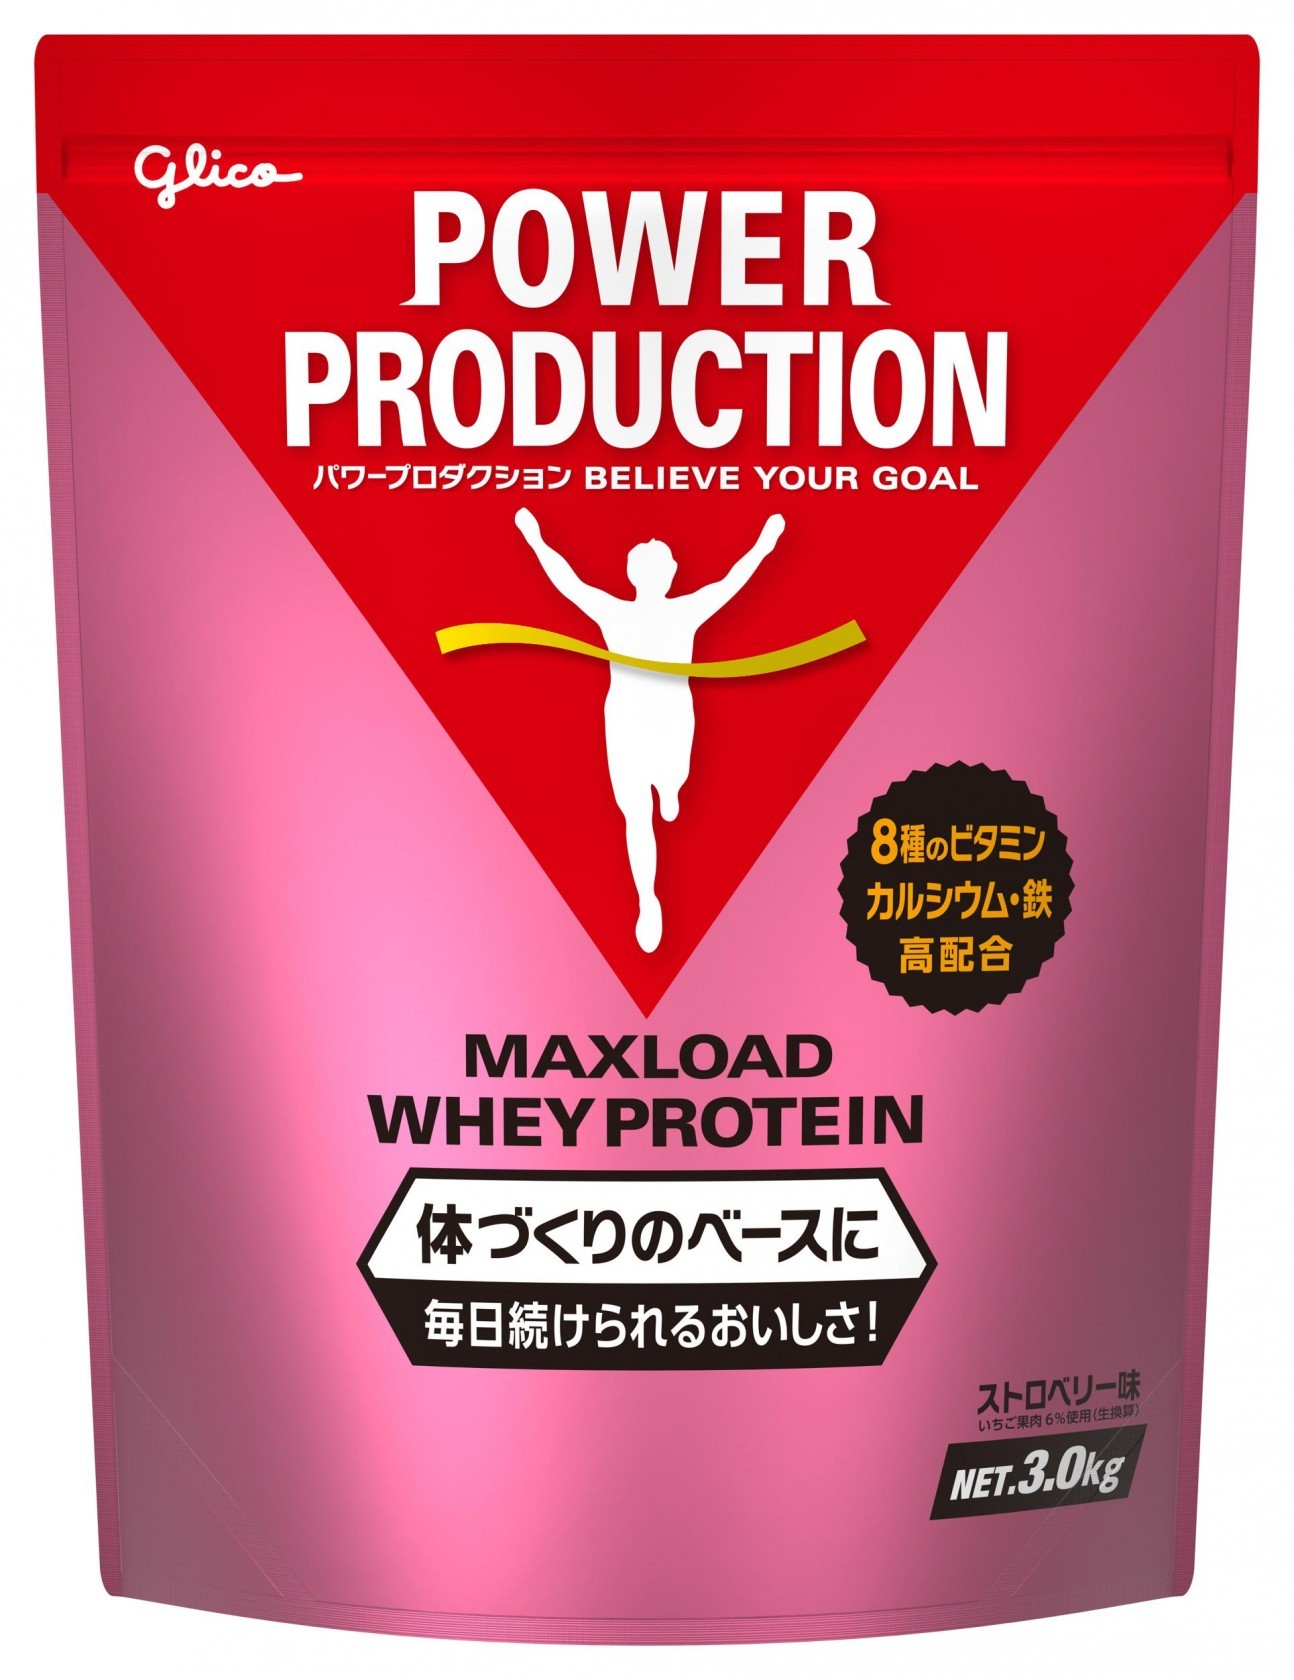 保管パワープロダクション マックスロード ホエイプロテイン チョコレート味 3.5… 健康用品